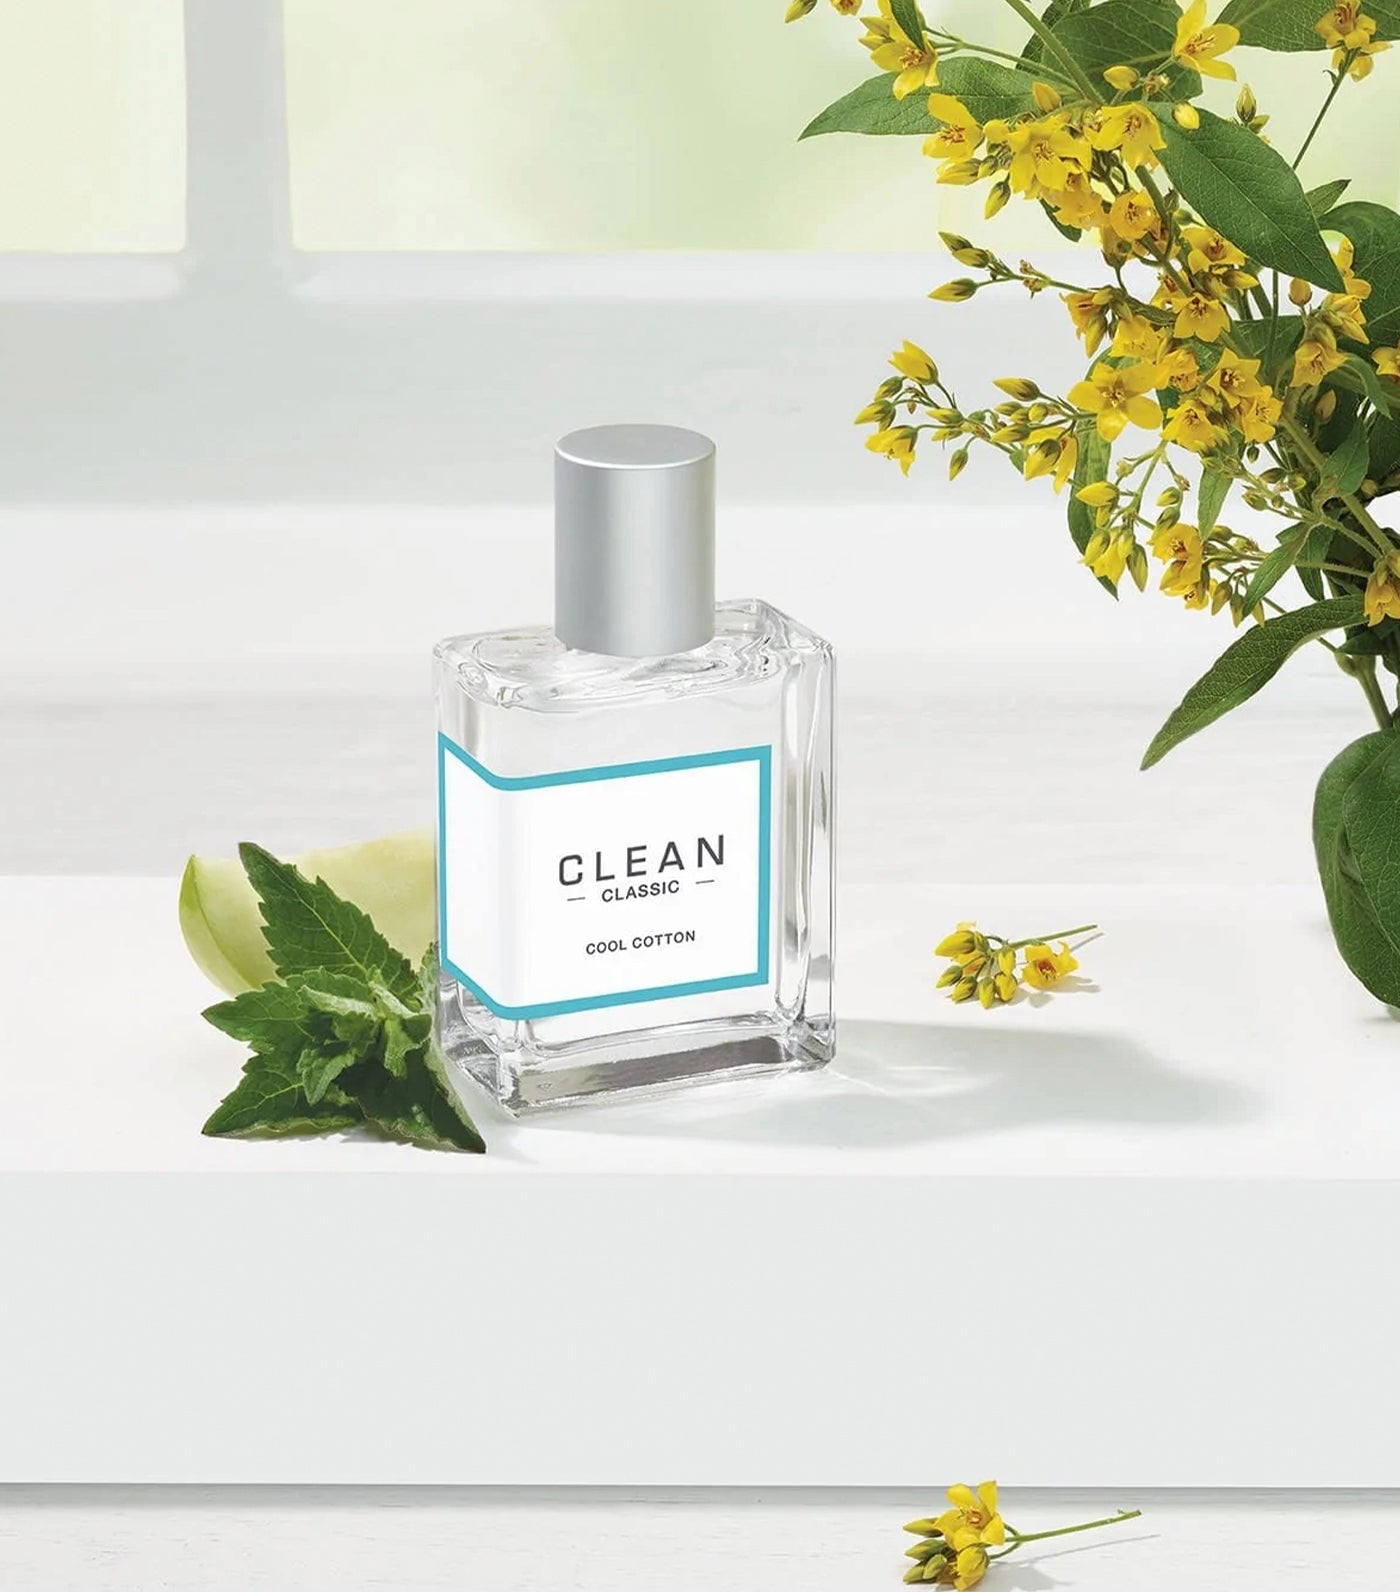 Clean Cool Cotton Perfume - Clean